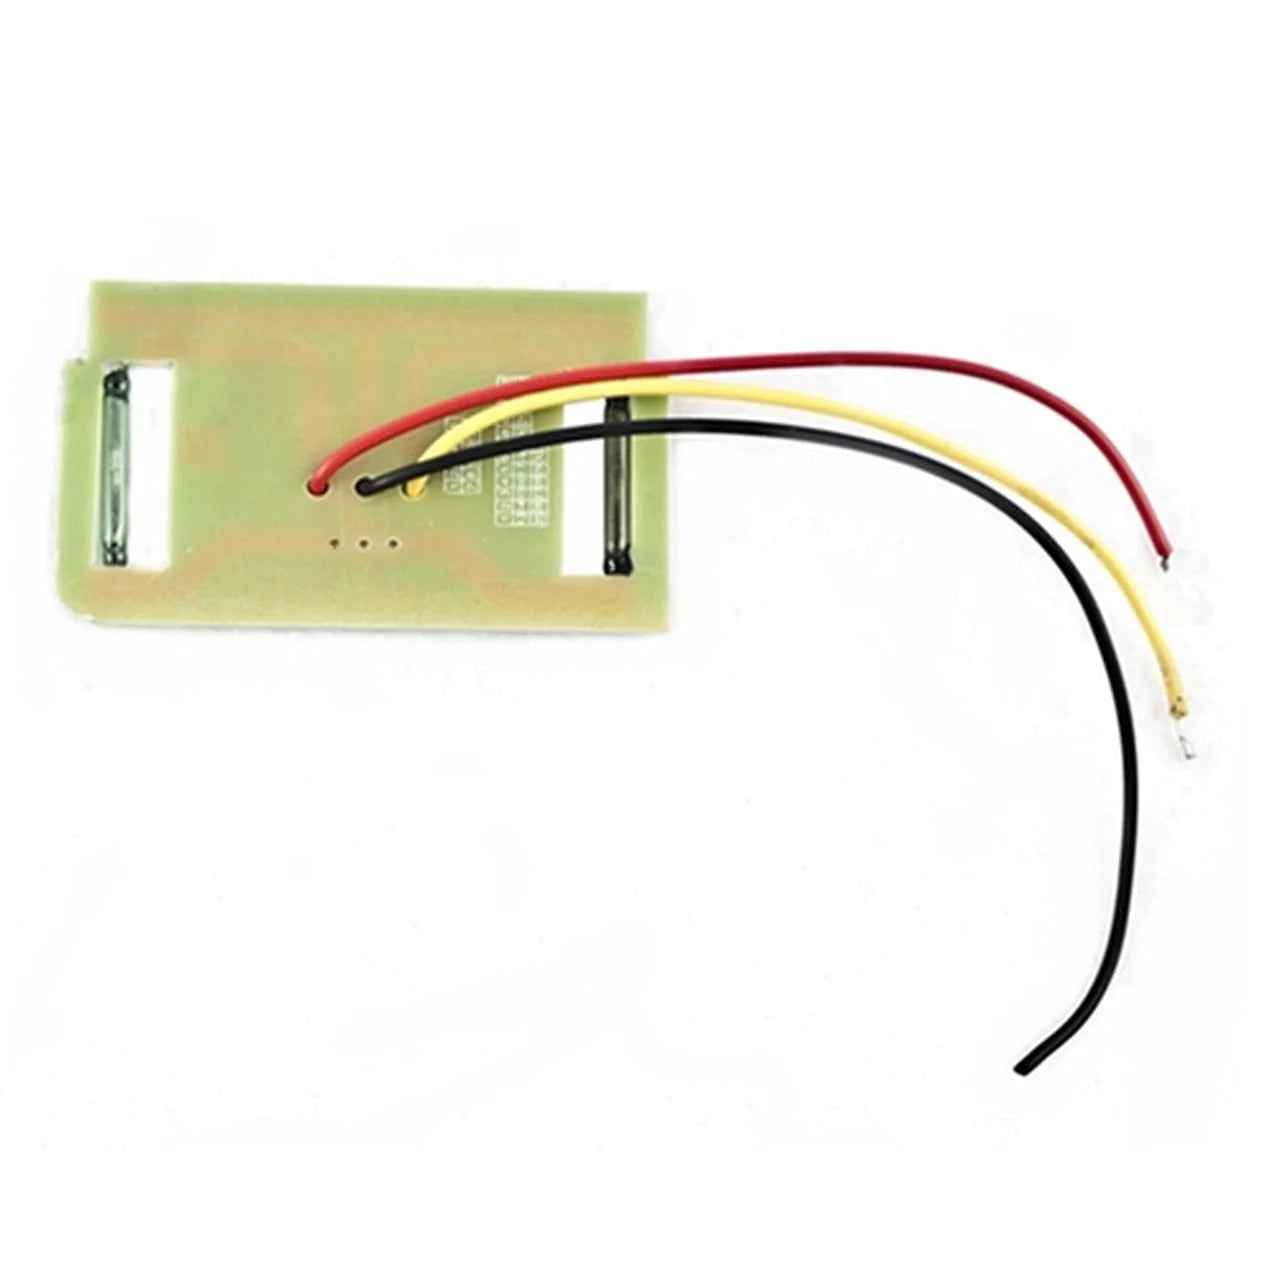 Aleko Magnetic Switch for Sliding Gate Opener -